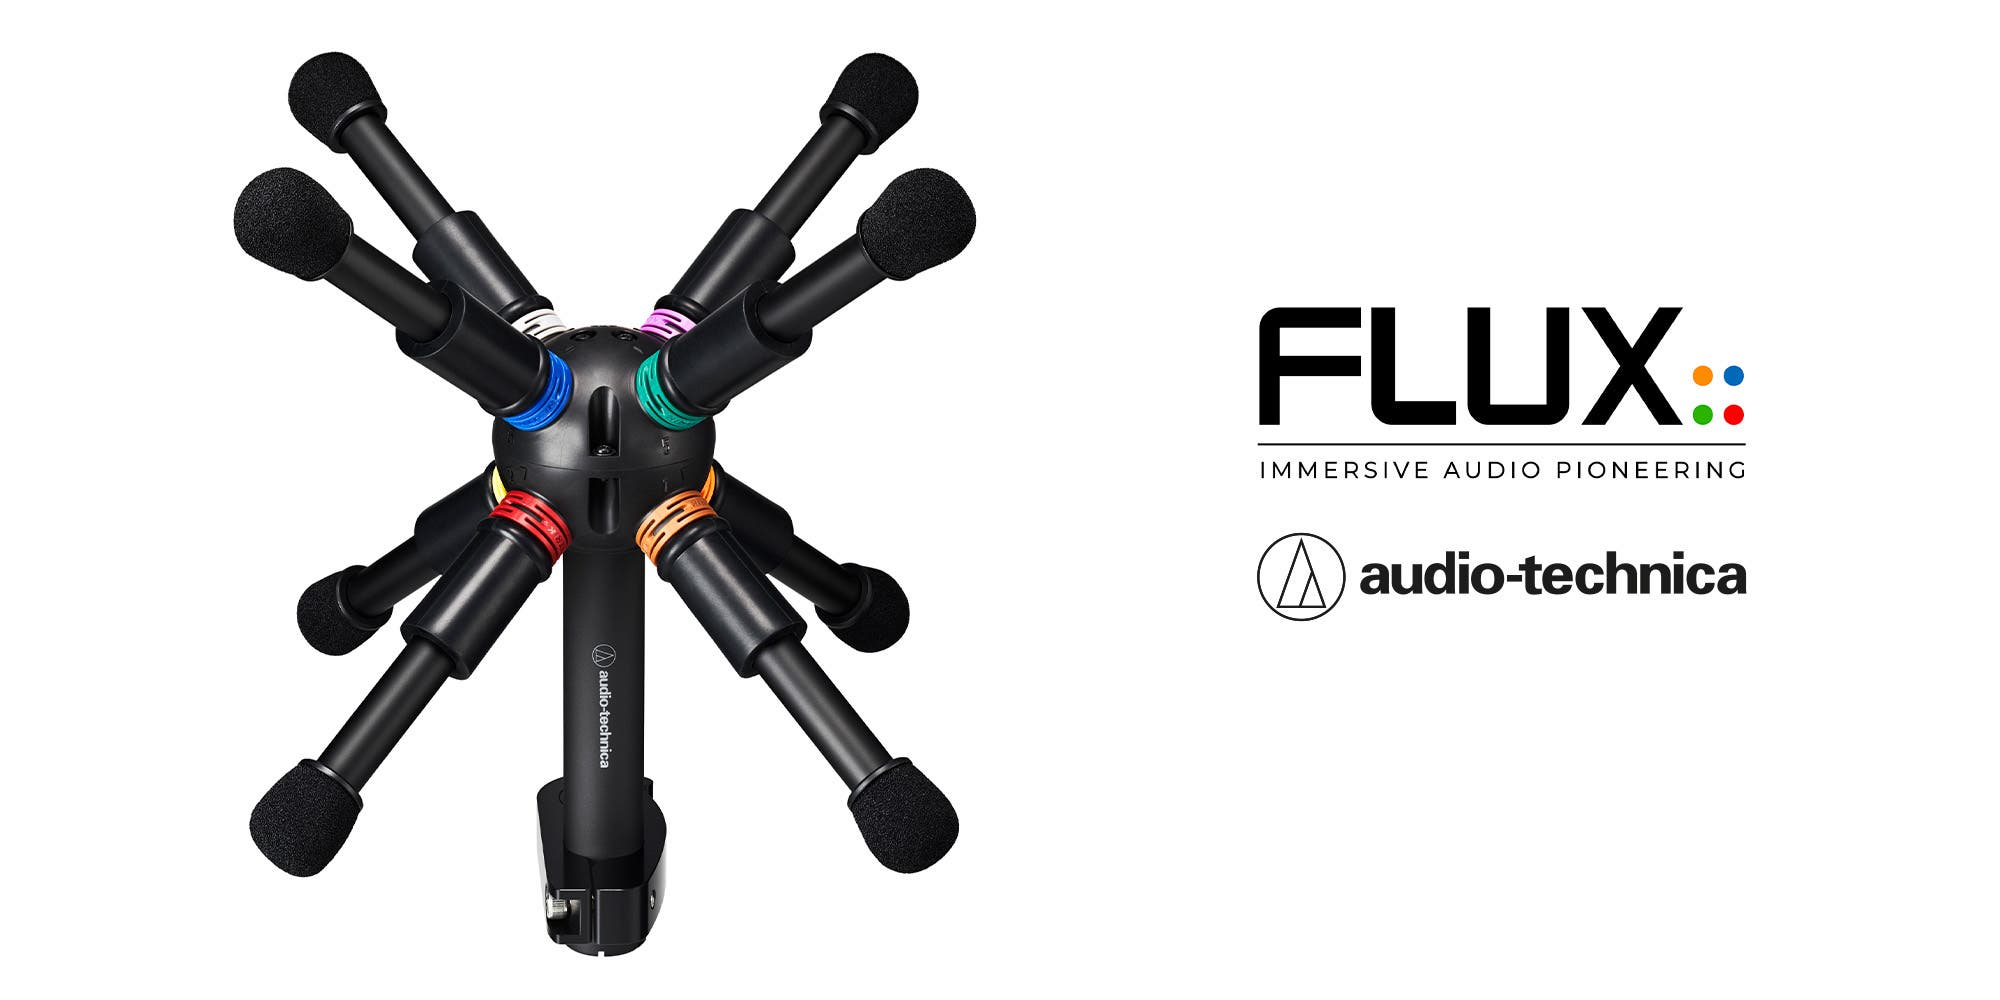 Audio-Technica BP3600 Mikrofon und Flux::Immersive liefern leistungsstarke  Hardware/Software-Lösung für die immersive Audioproduktion 